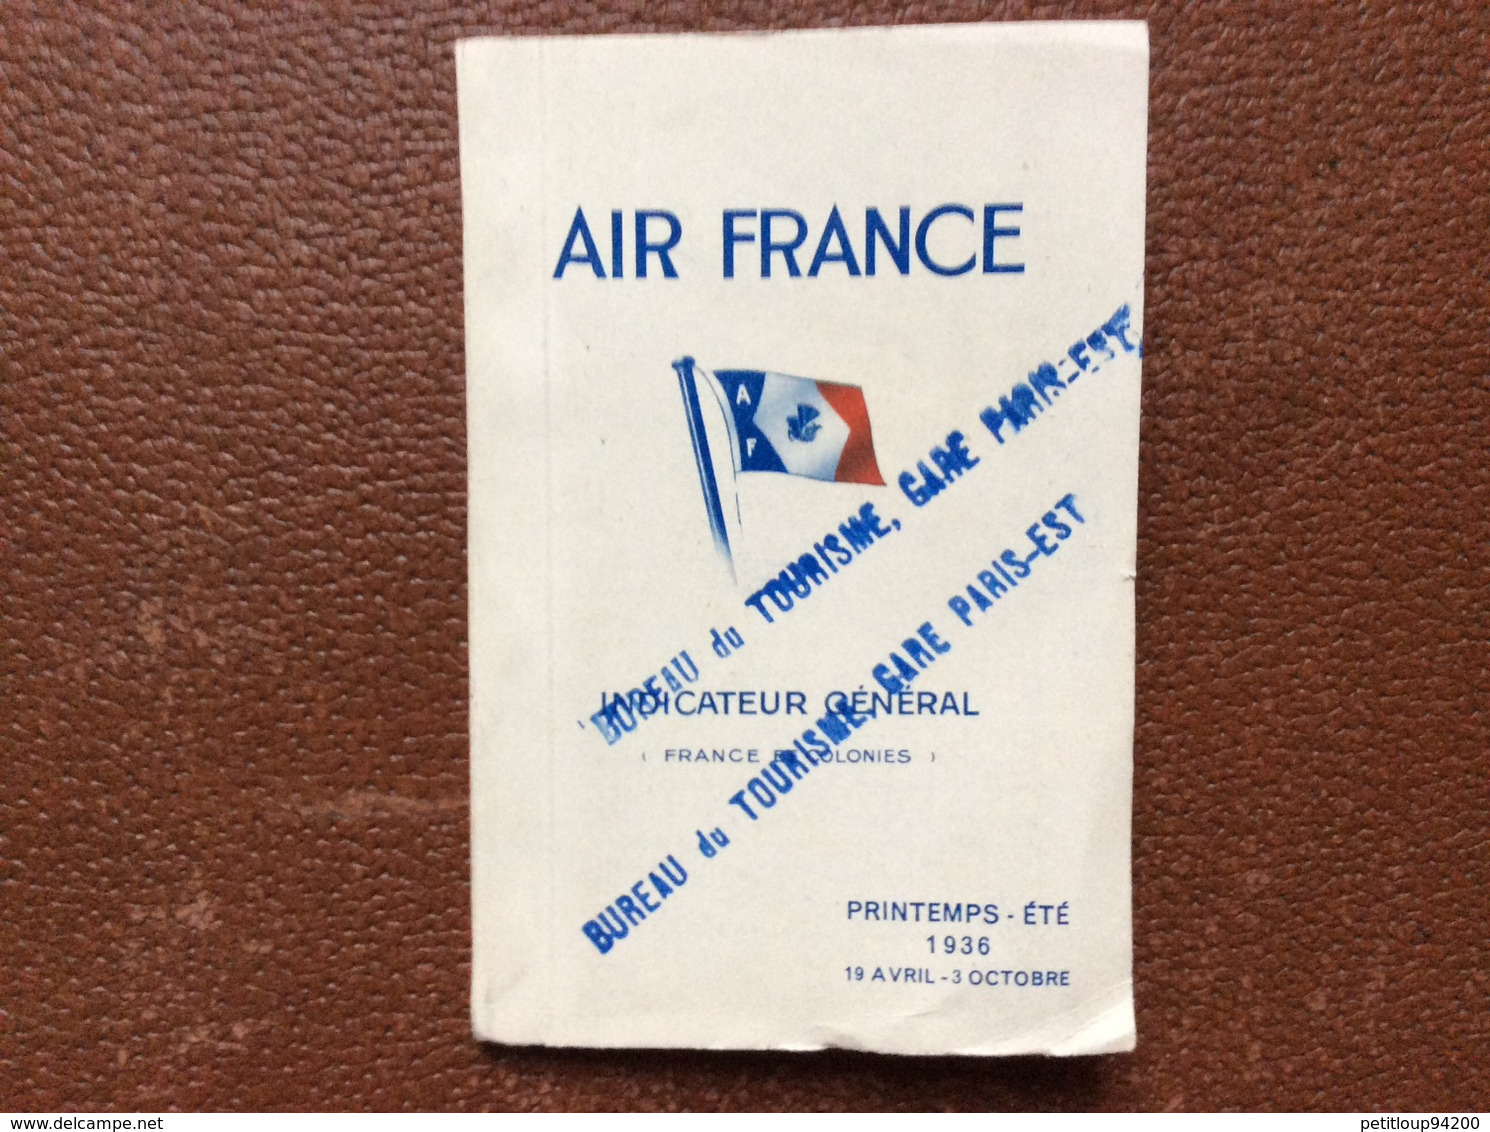 INDICATEUR GENERAL AIR FRANCE  France Et Colonies  PRINTEMPS-ETE 1936  19 Avril-3 Octobre - Zeitpläne